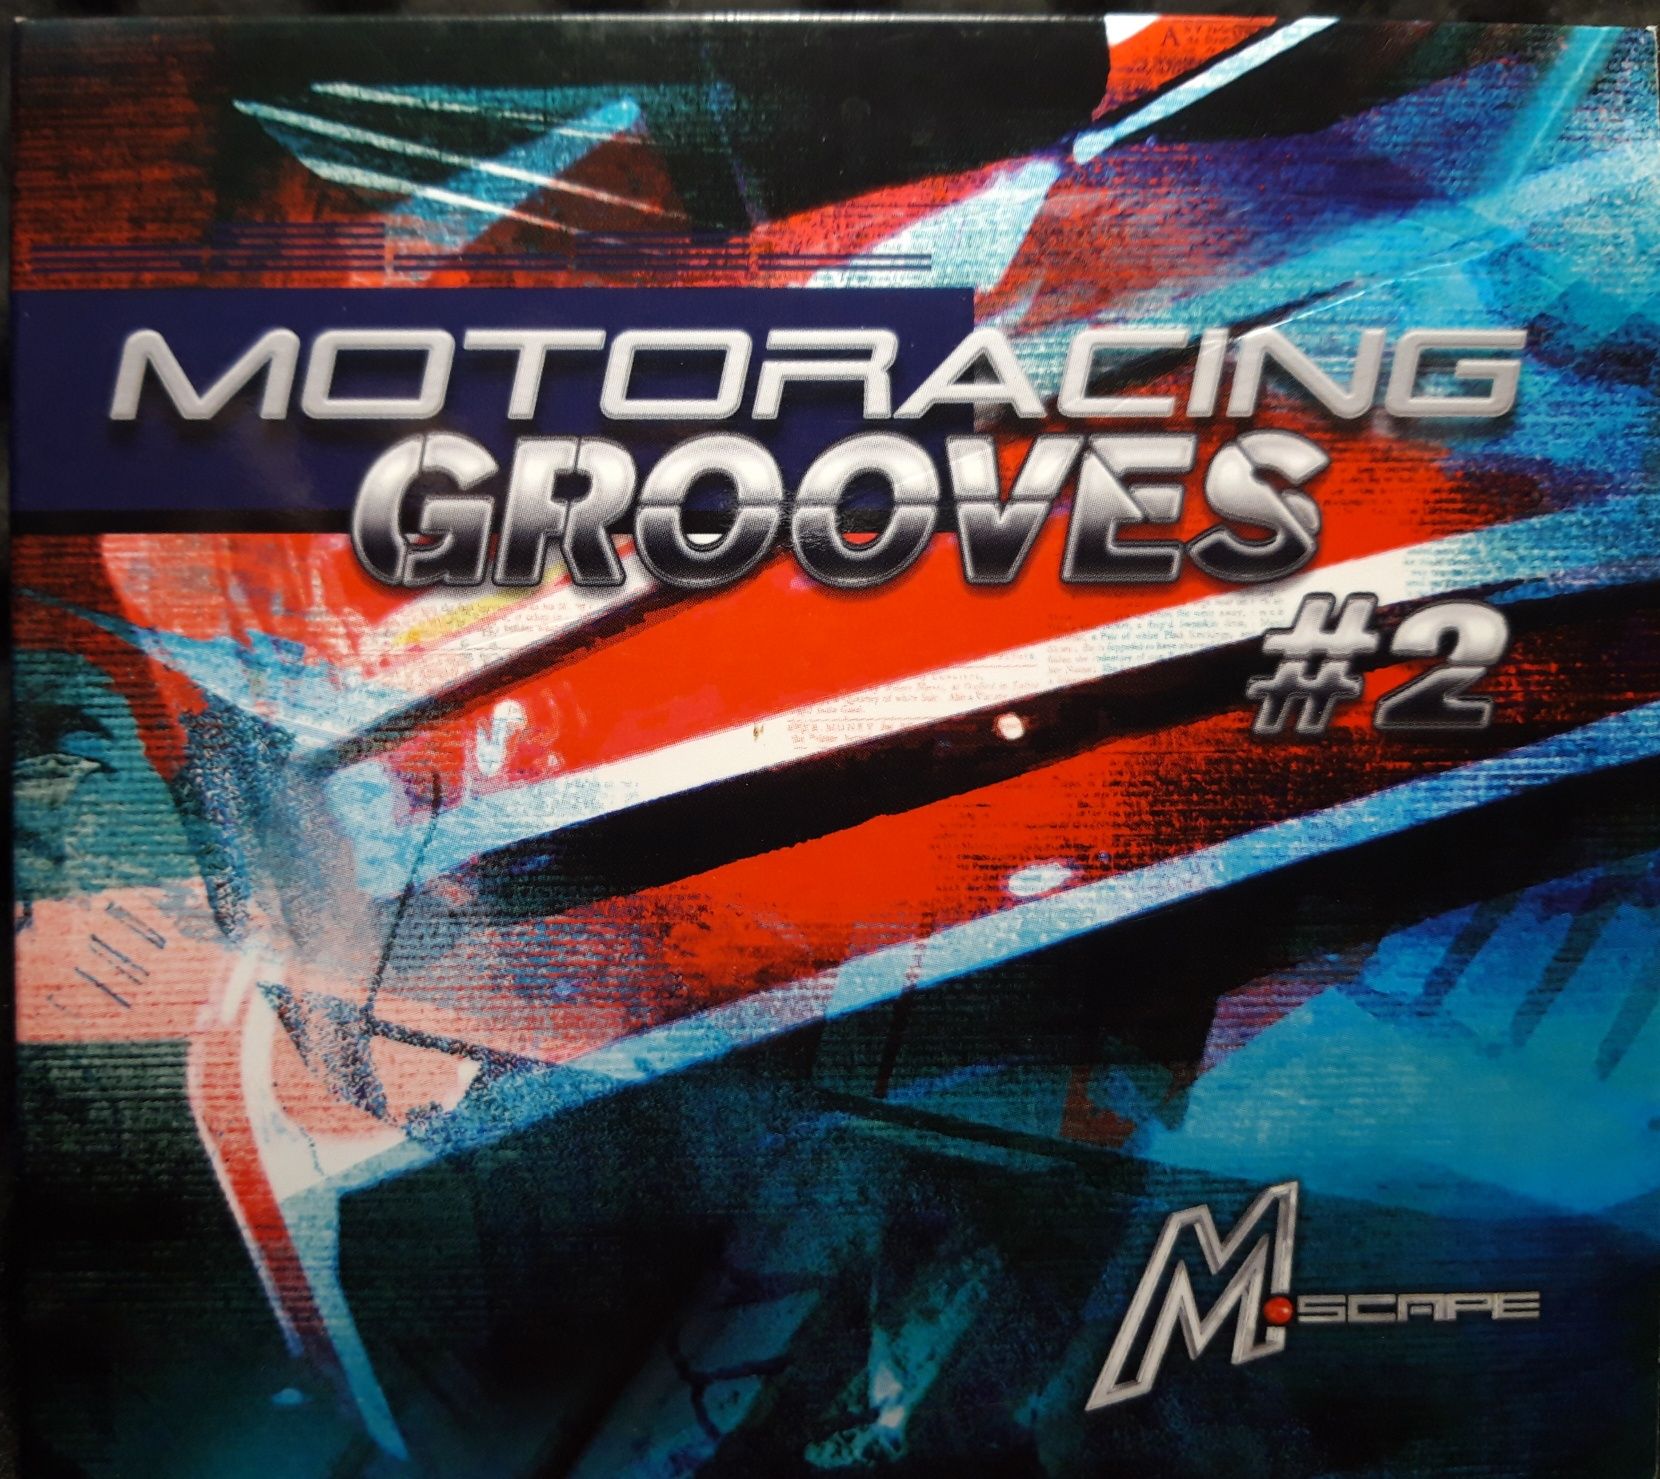 Motoracing Grooves #2 (CD, 2007)